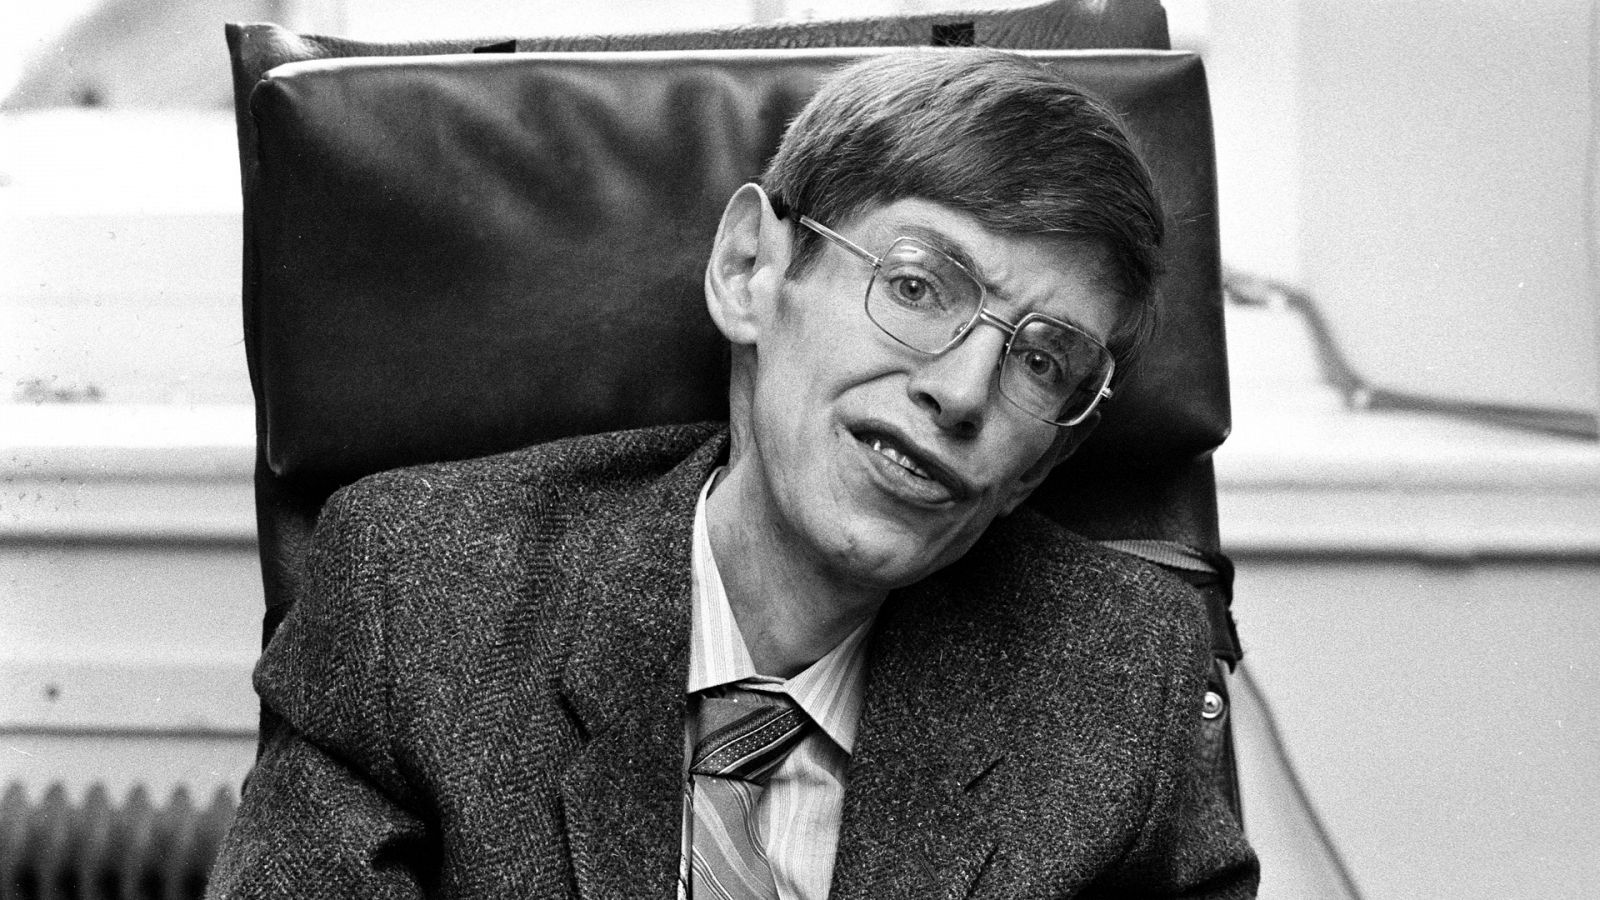 Somos documentales - Hawking: Más allá de la ciencia